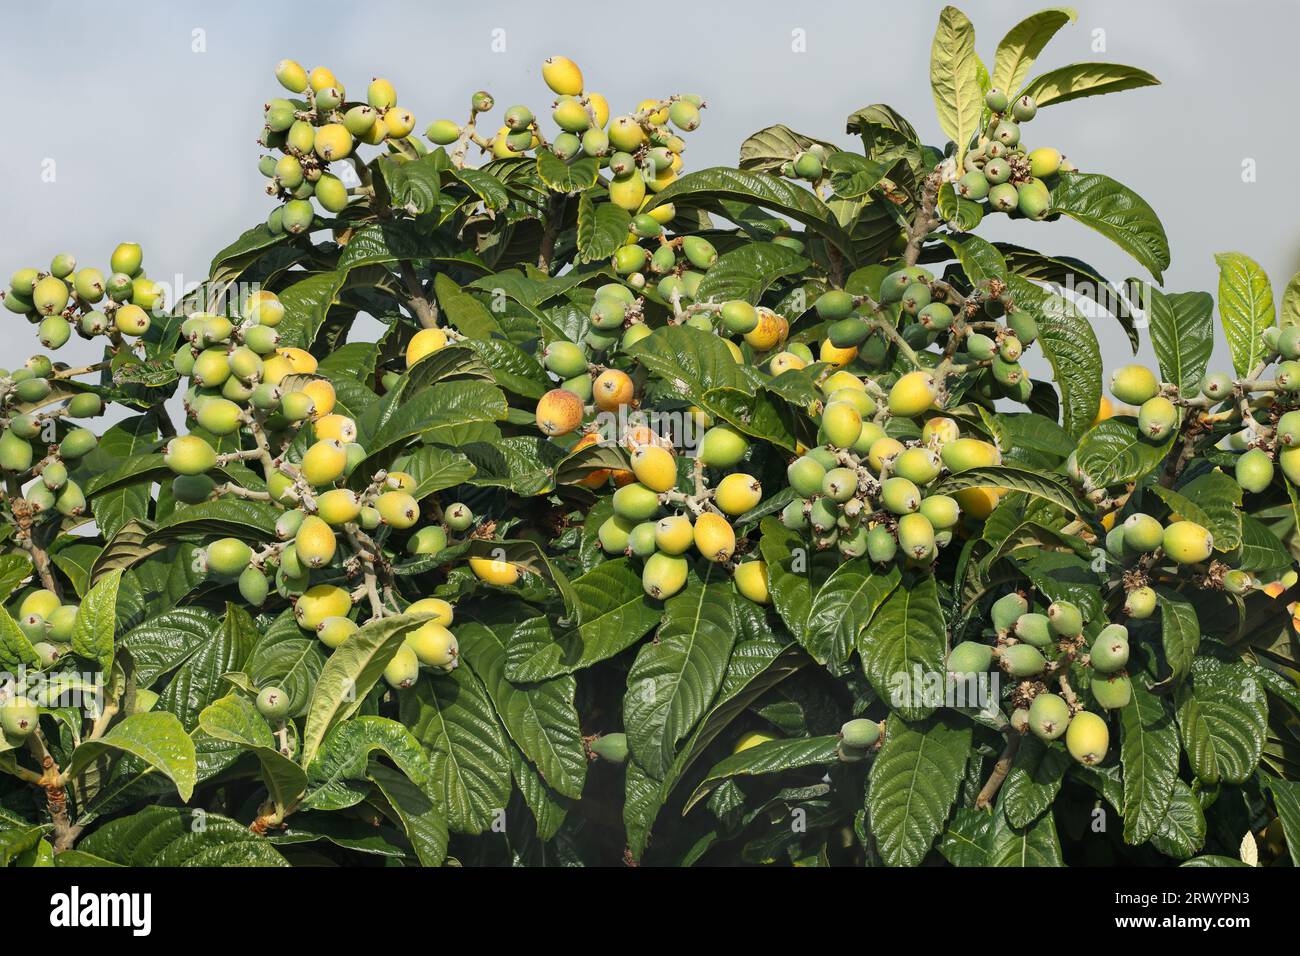 Loquat, ciruela japonesa (Eriobotrya japonica), frutas en un árbol, Islas Canarias, La Palma Foto de stock